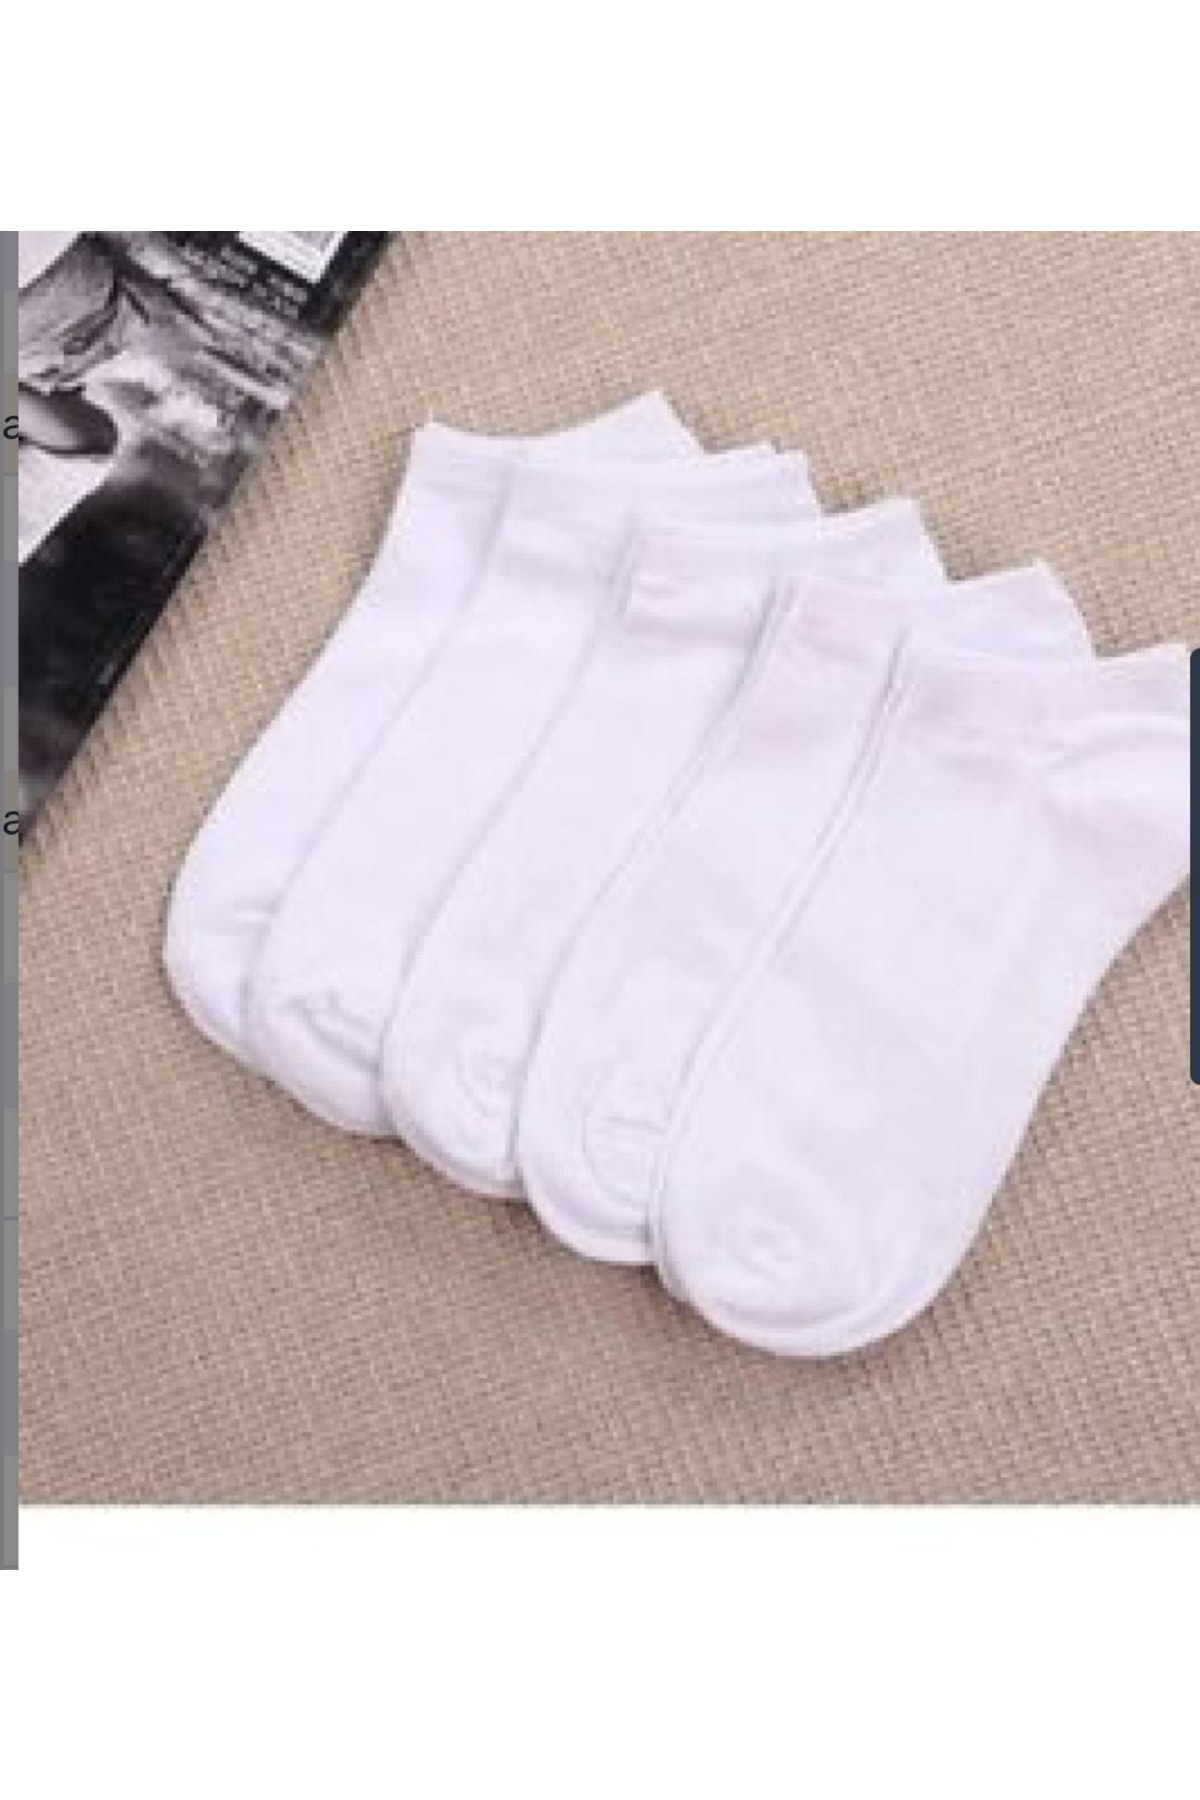 Gezen Çorap Unisex Beyaz Yazlık Kısa Patik Çorap Kutulu 10 Lu Paket